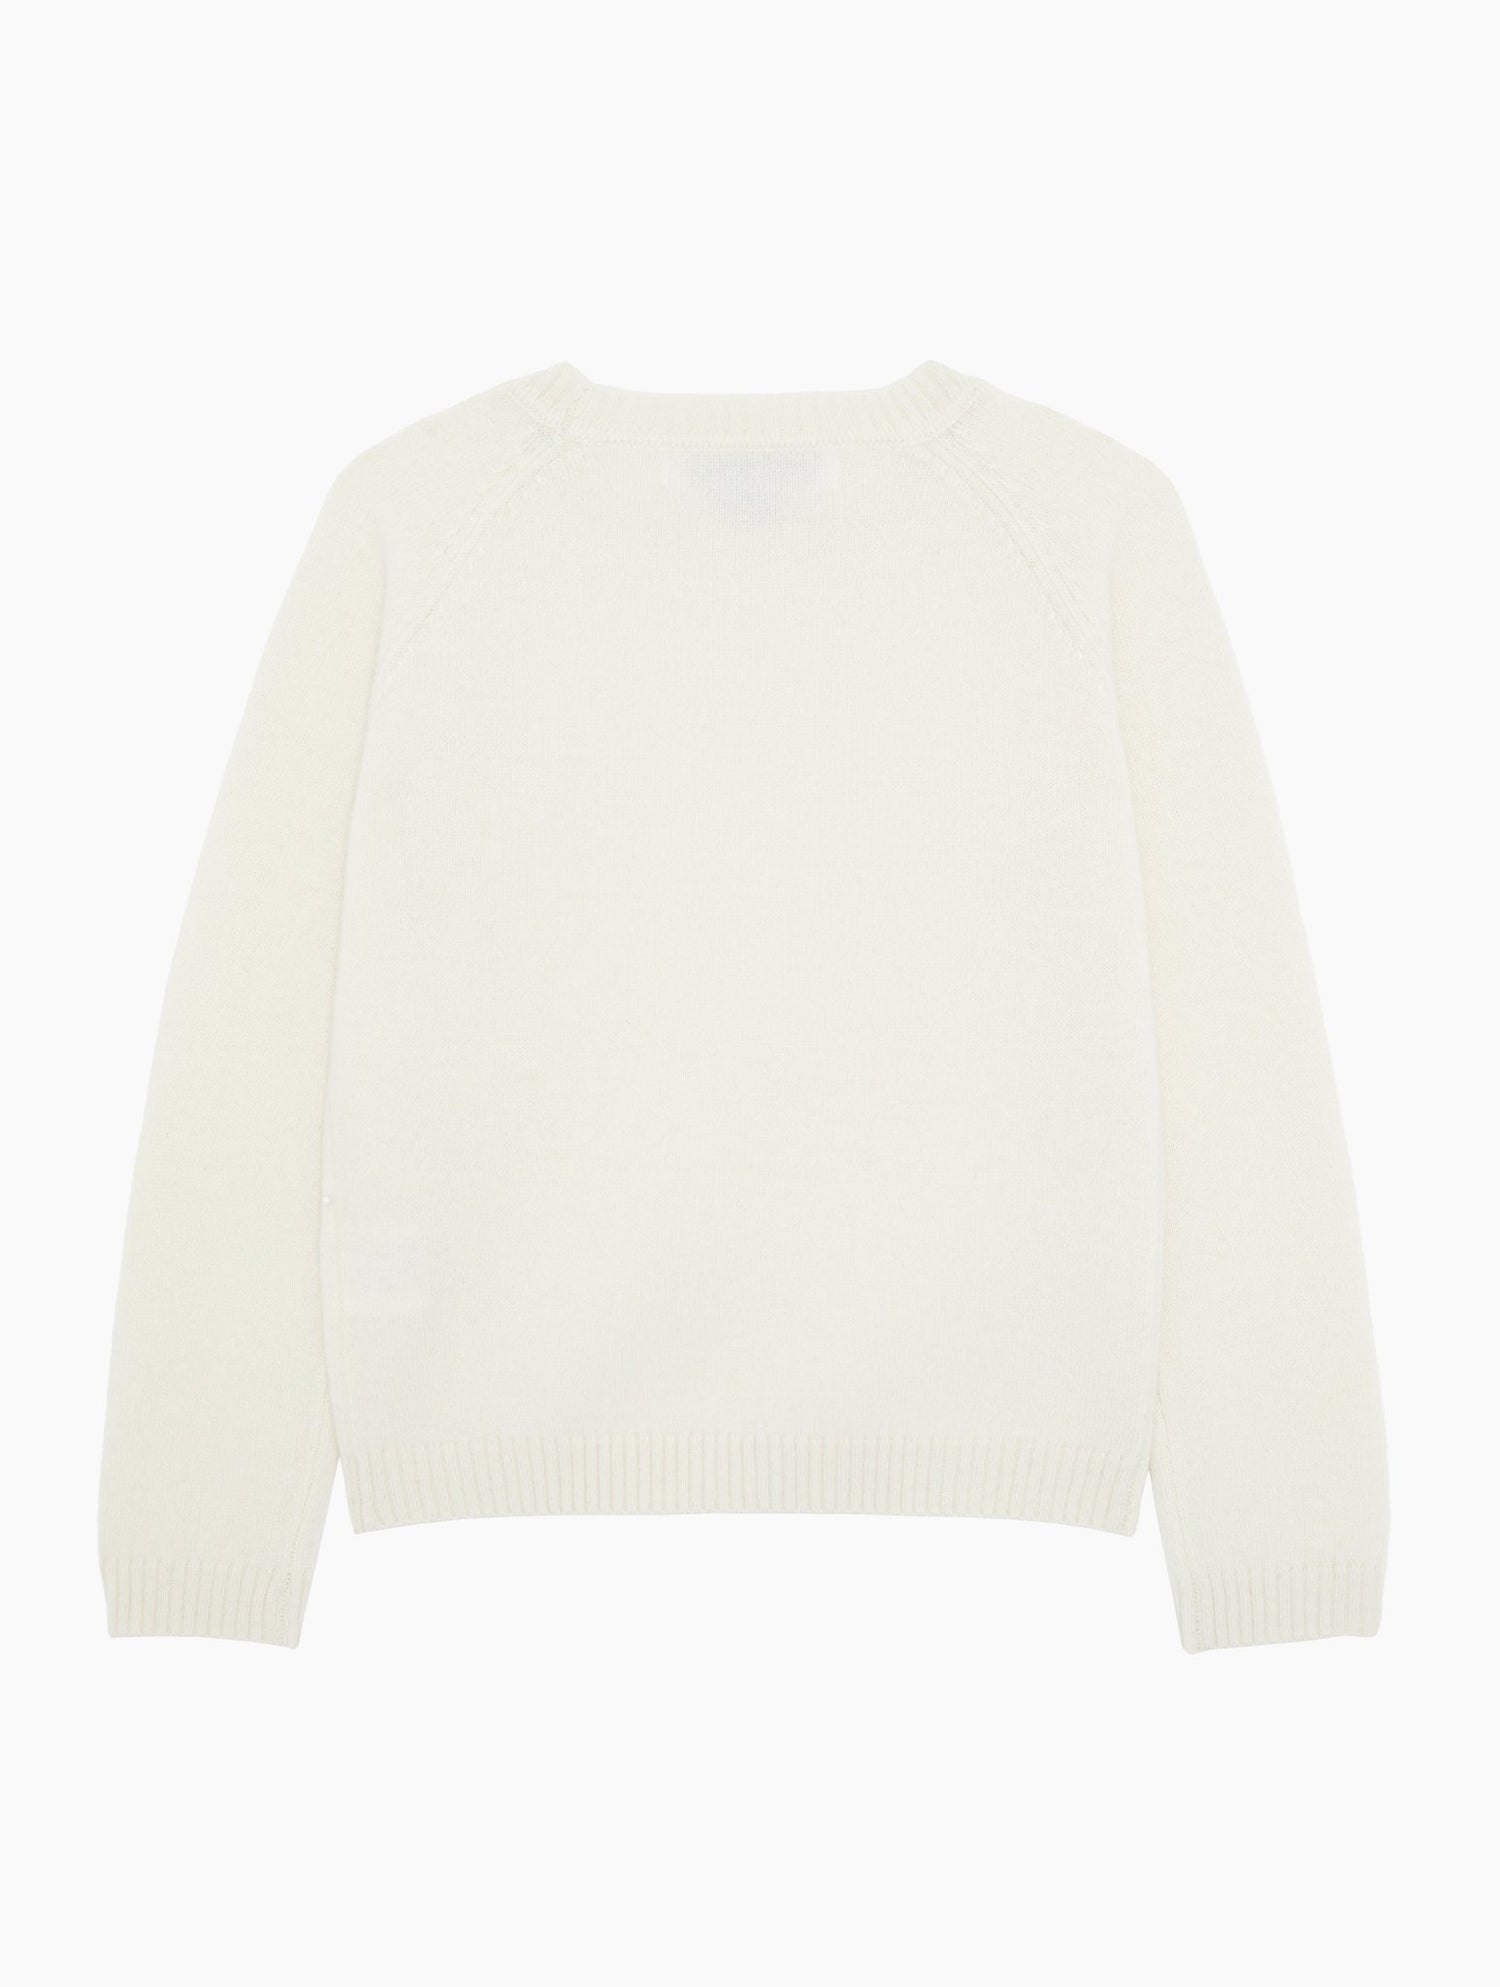 Cashmere Sweater in Ecru White